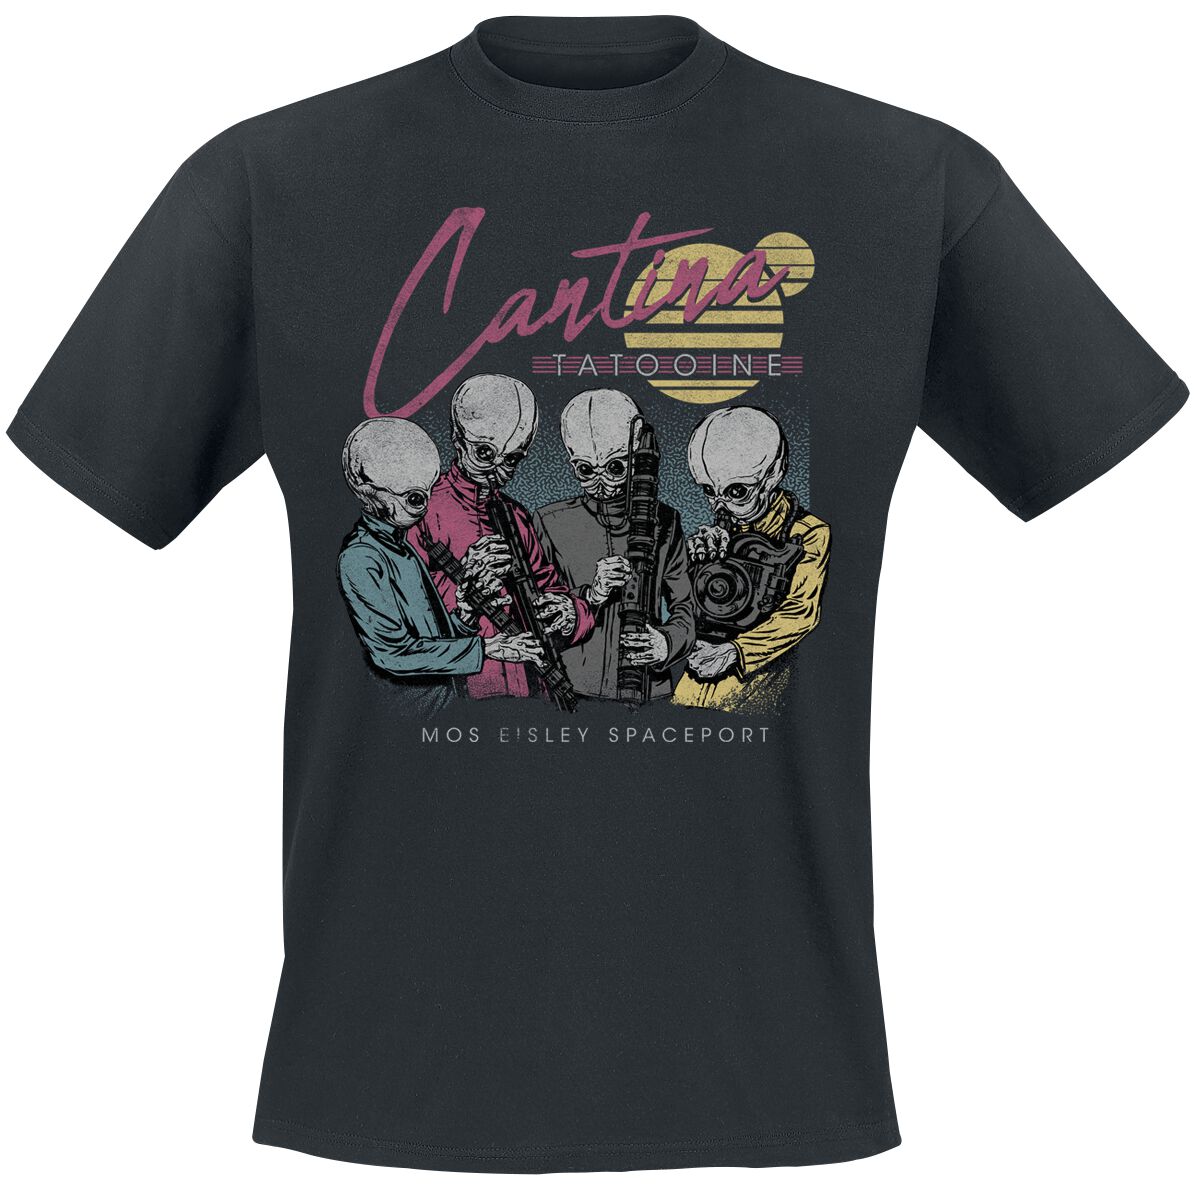 Star Wars T-Shirt - Cantina Miami - S bis 4XL - für Männer - Größe XL - schwarz  - EMP exklusives Merchandise!